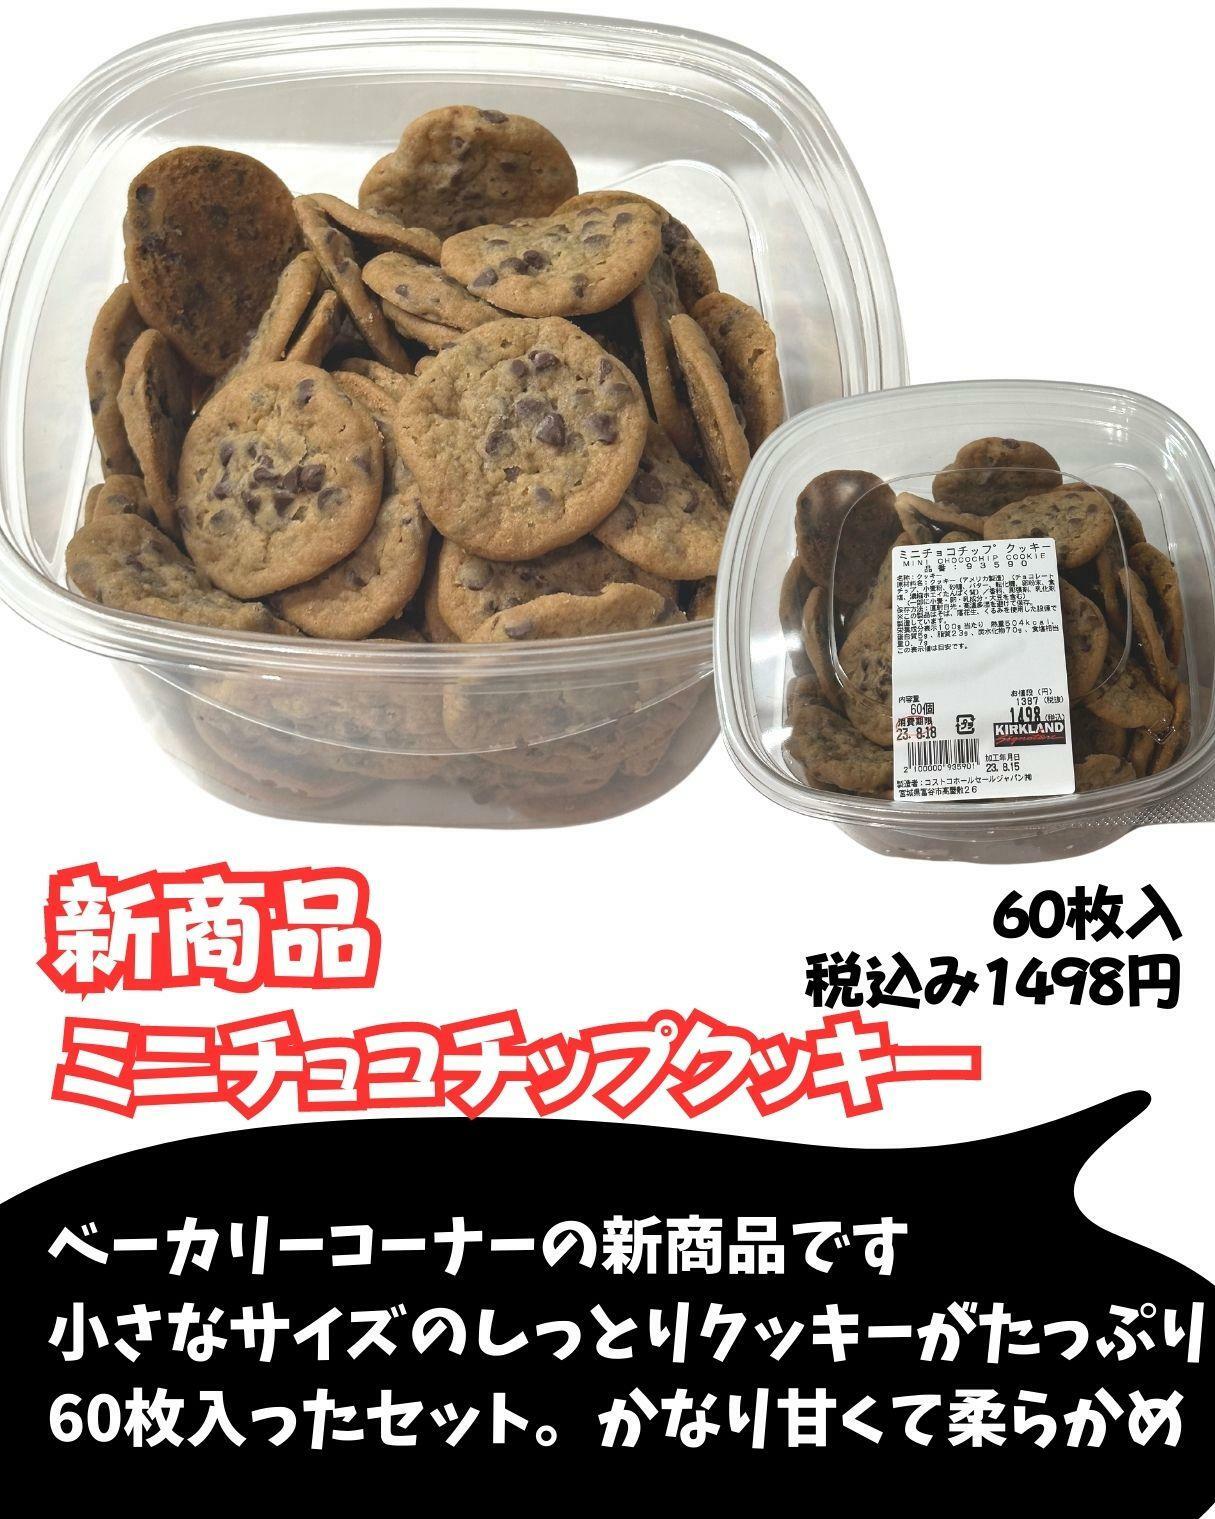 【コストコ】ミニチョコチップクッキー